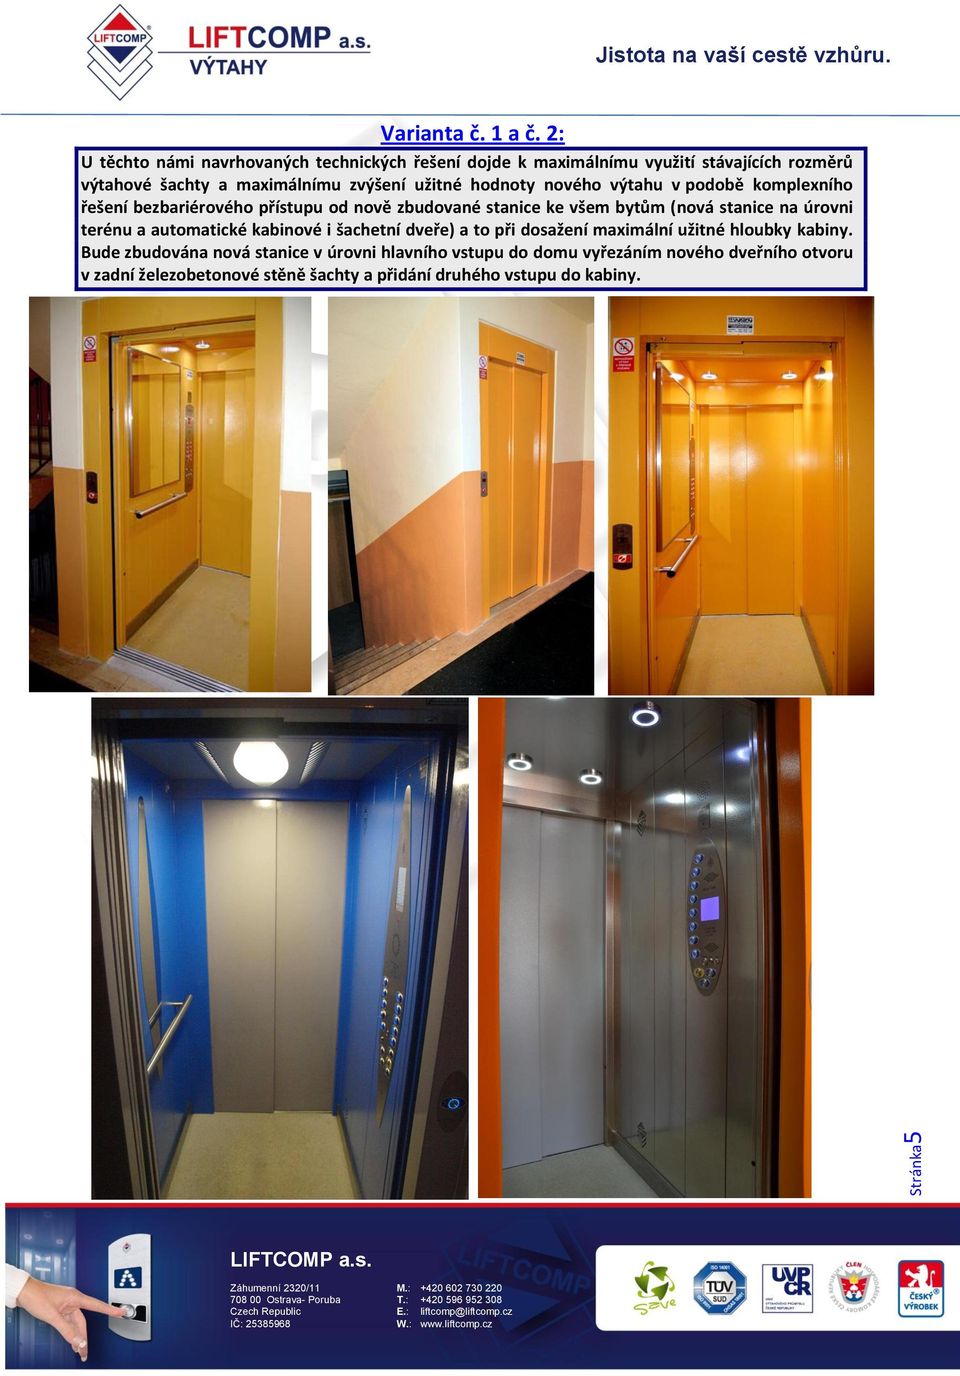 hodnoty nového výtahu v podobě komplexního řešení bezbariérového přístupu od nově zbudované stanice ke všem bytům (nová stanice na úrovni